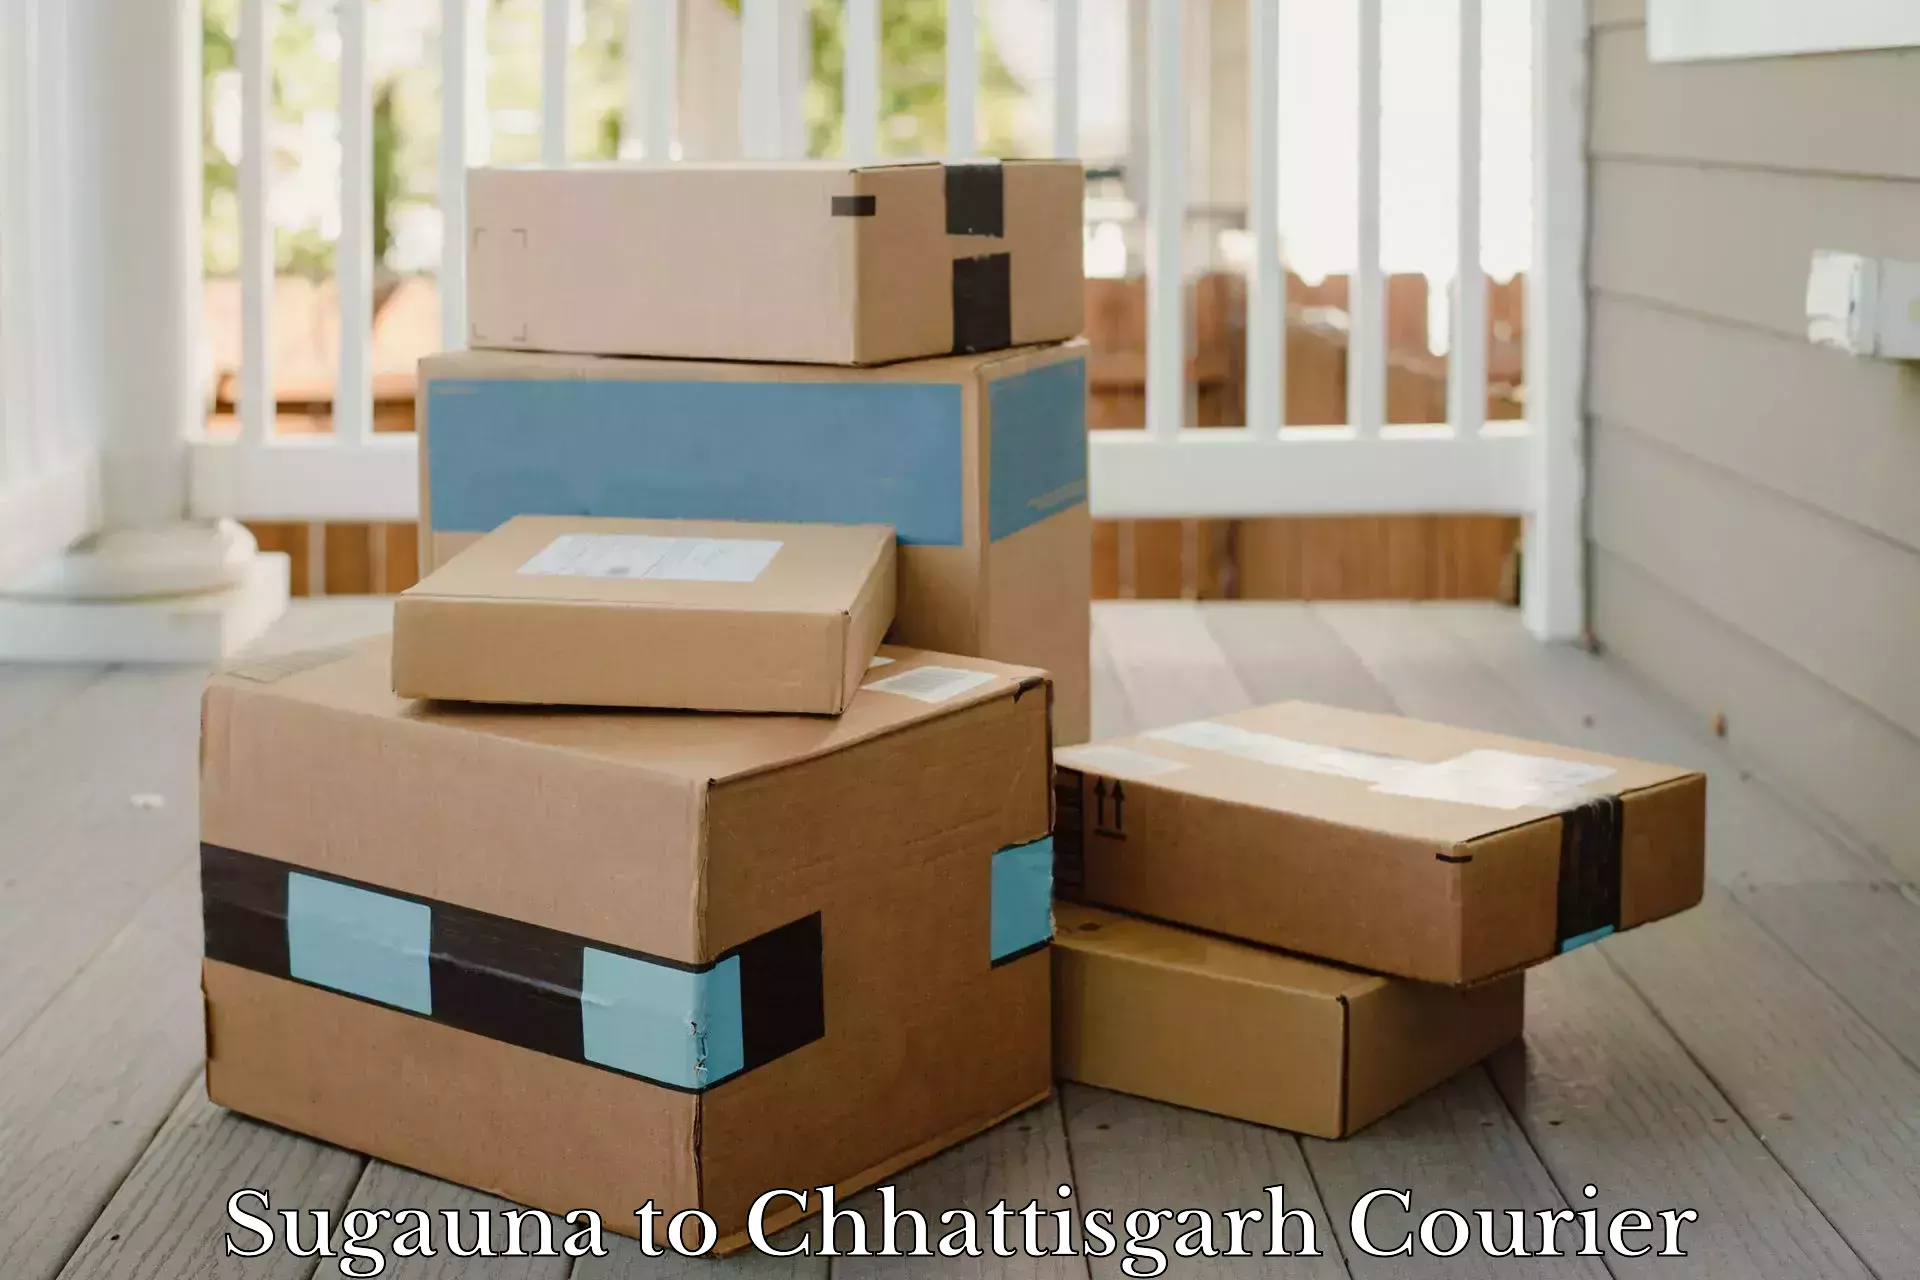 Custom courier packaging Sugauna to Chhattisgarh